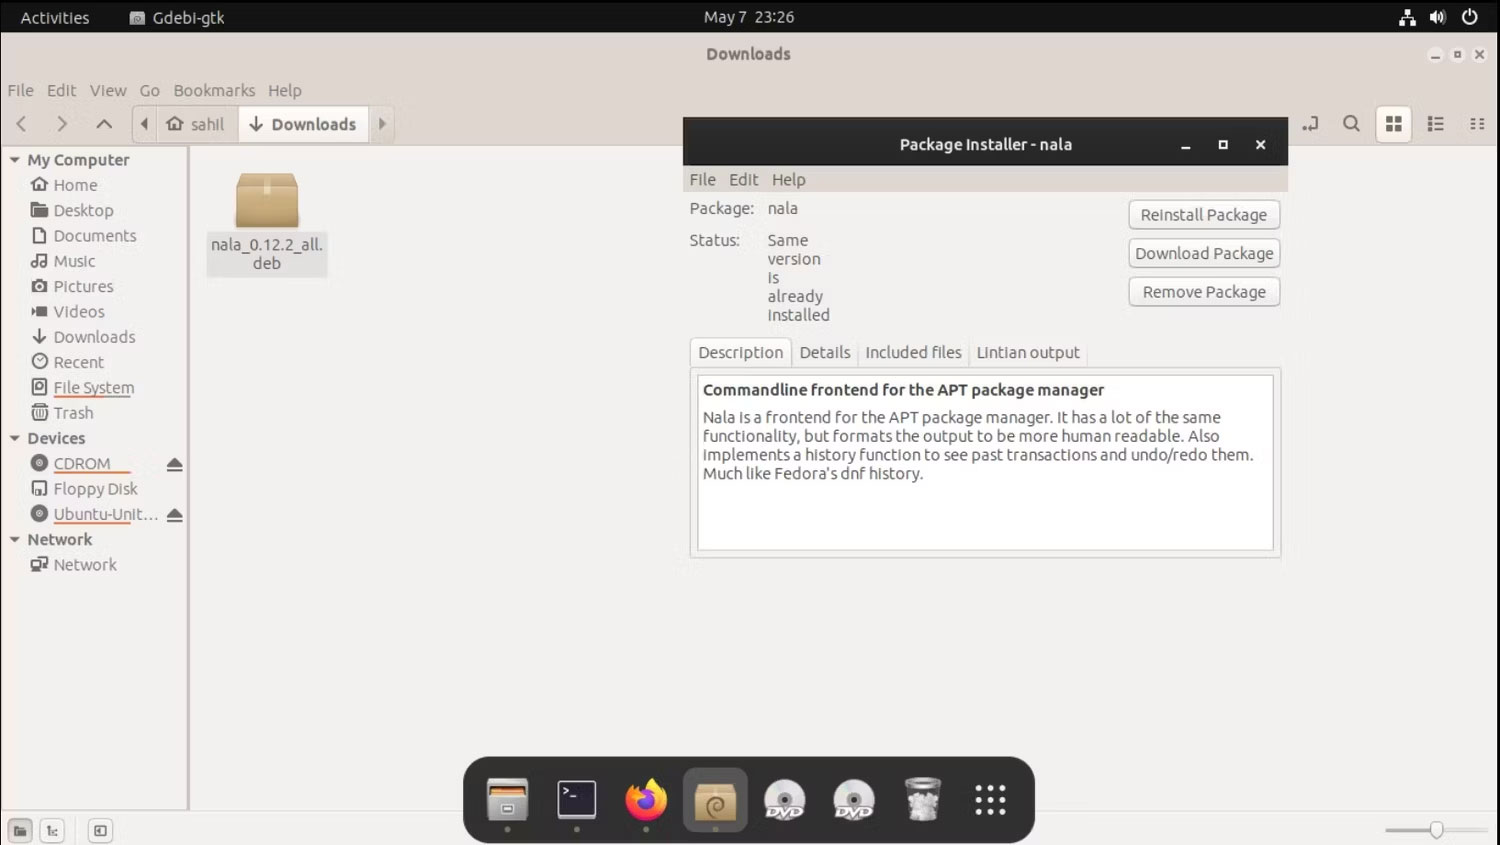 Todo lo que necesita saber sobre el uso de Nala en Ubuntu Imagen 3